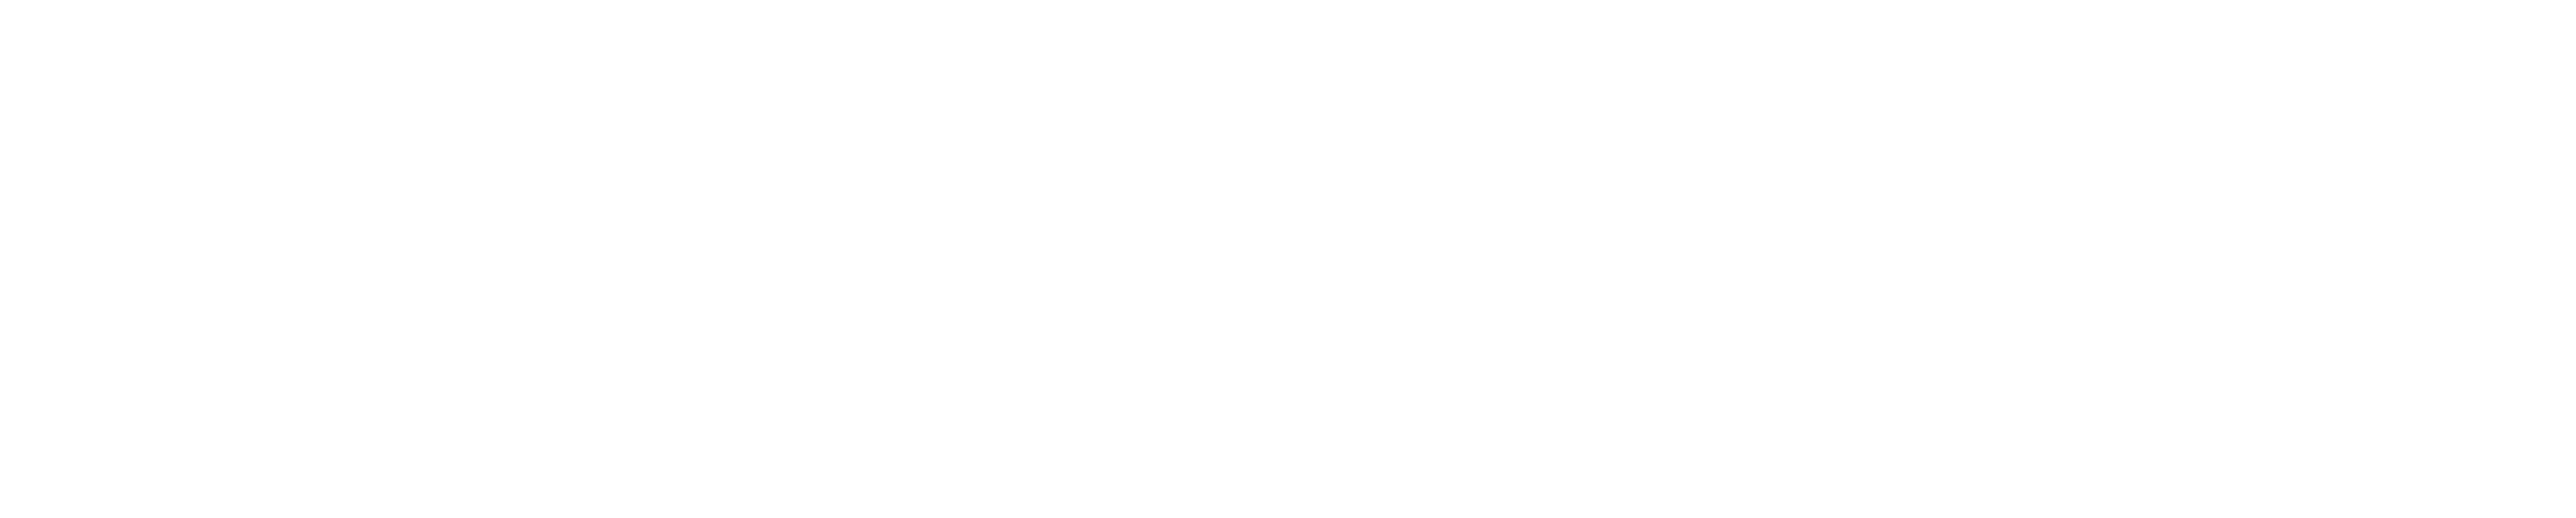 Metasys Technologies